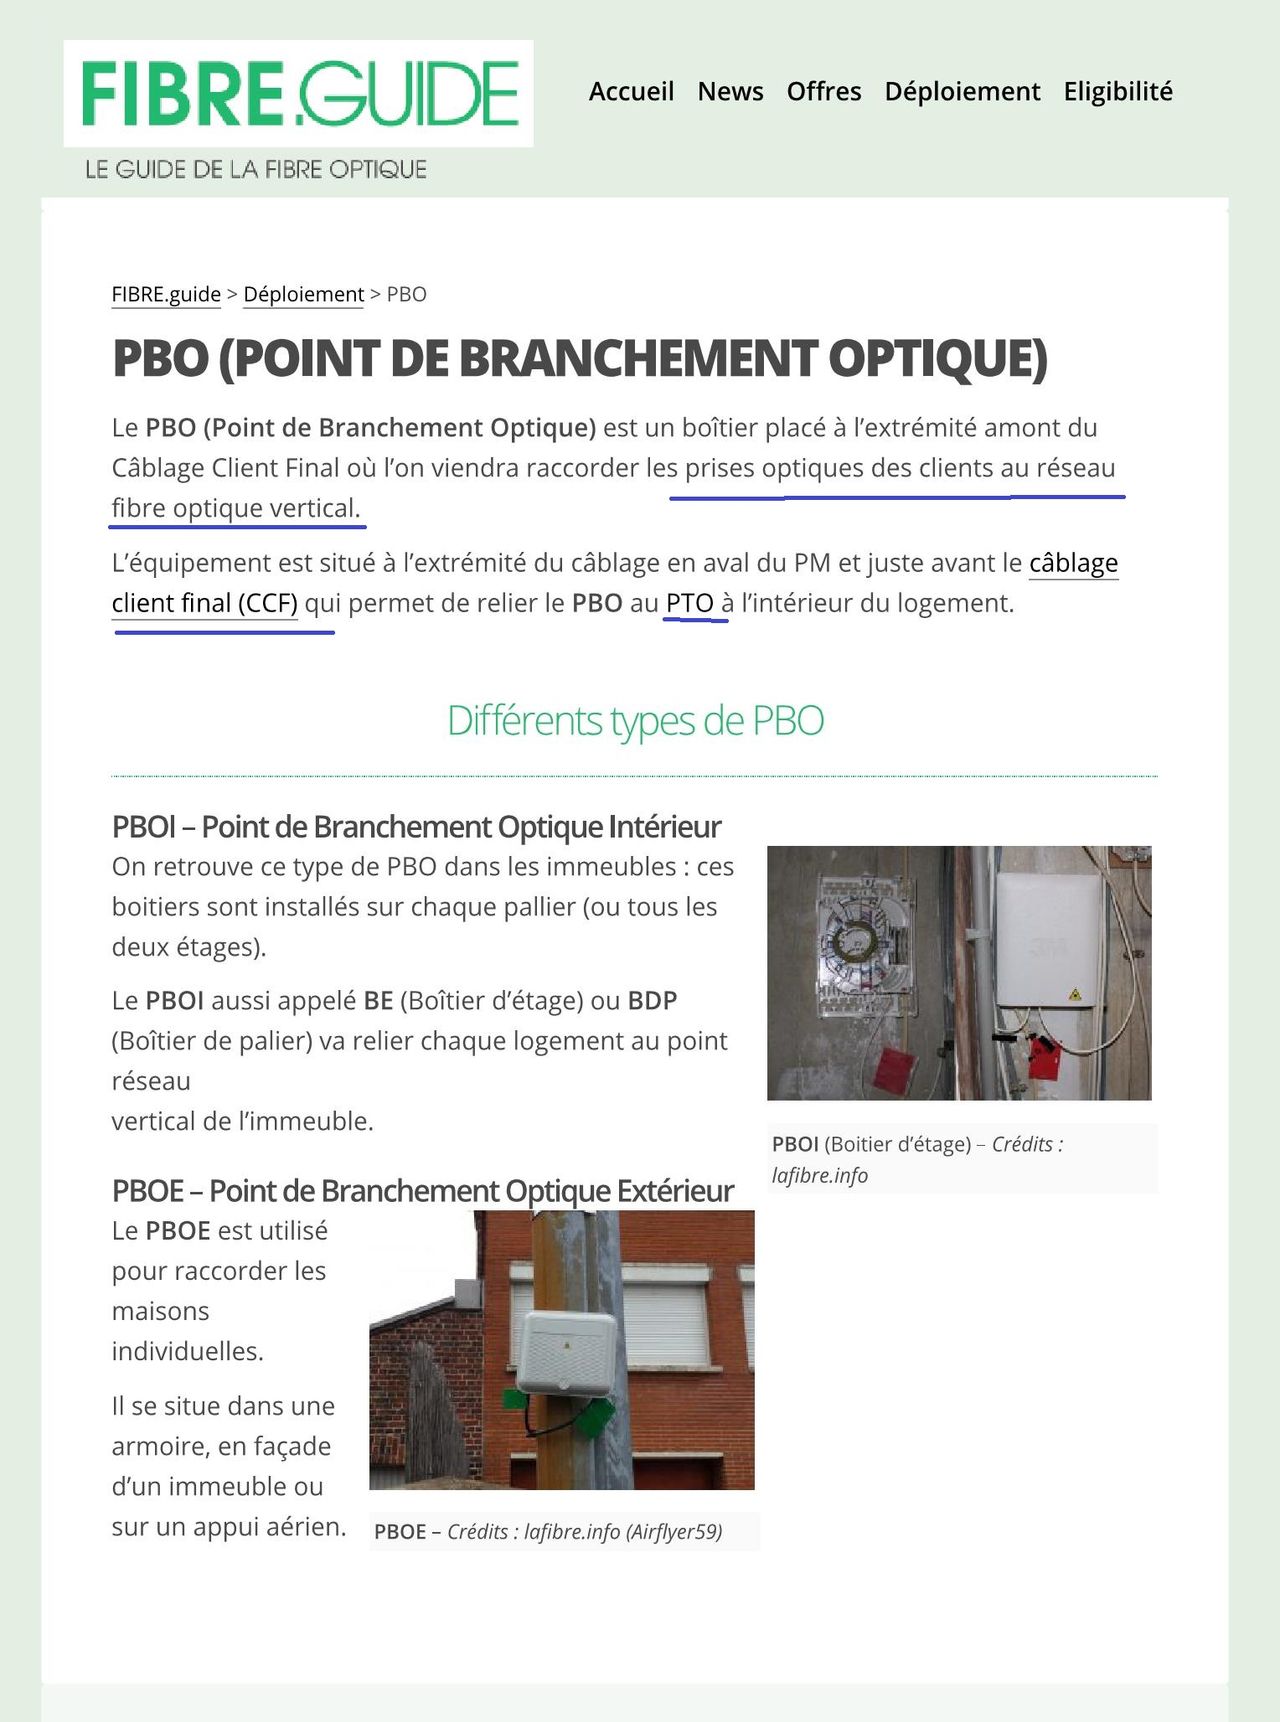 PBO Point de Branchement Optique FIBRE Page 1